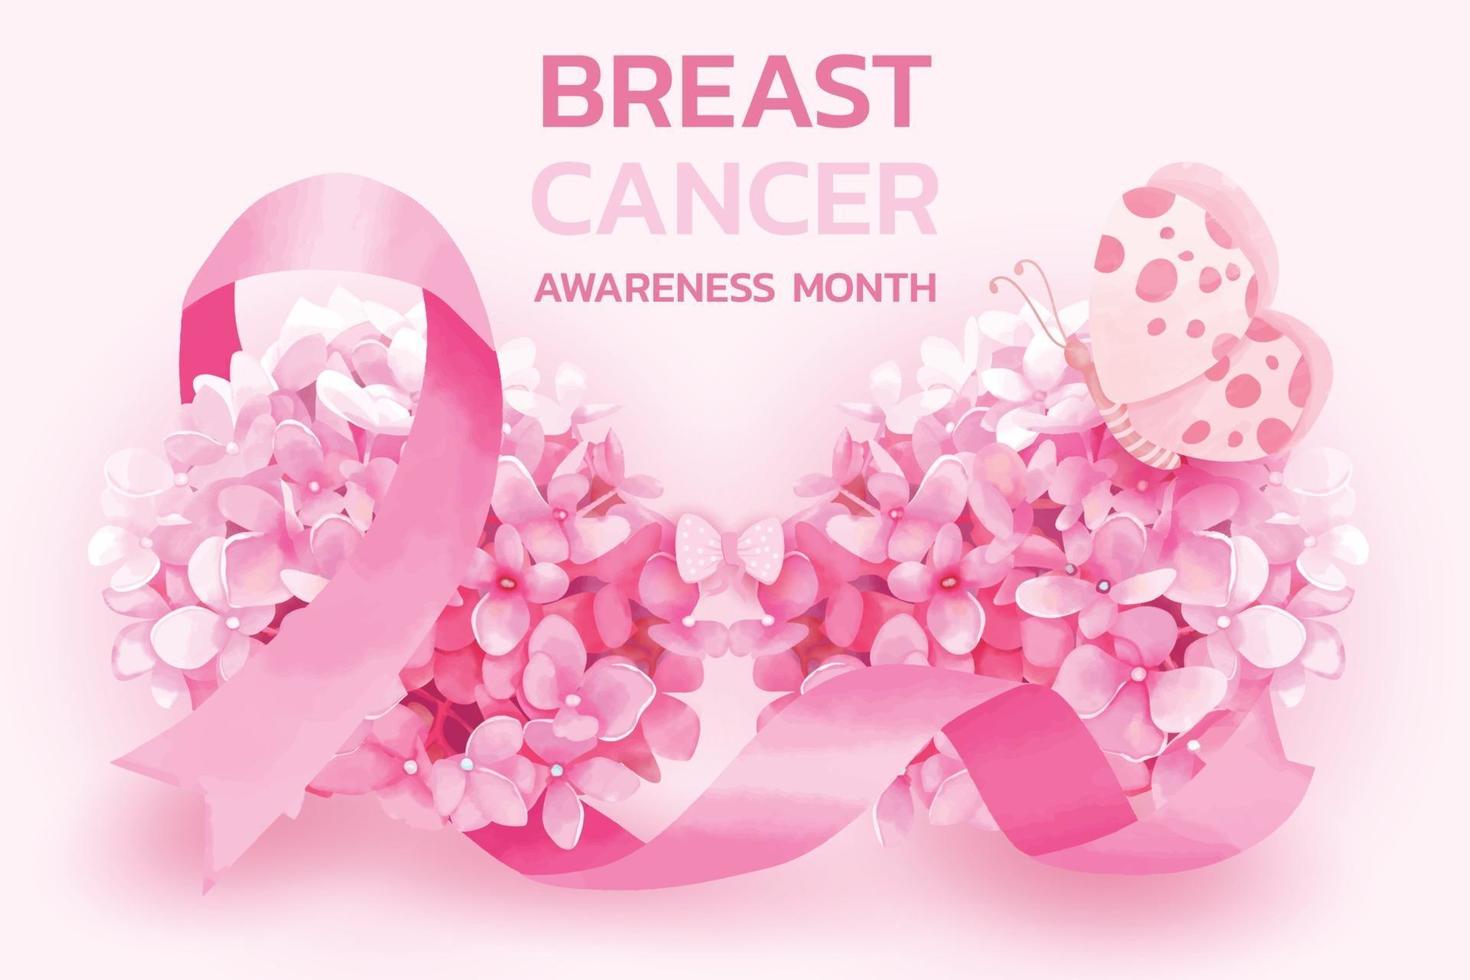 Monat des Bewusstseins für Brustkrebs vektor